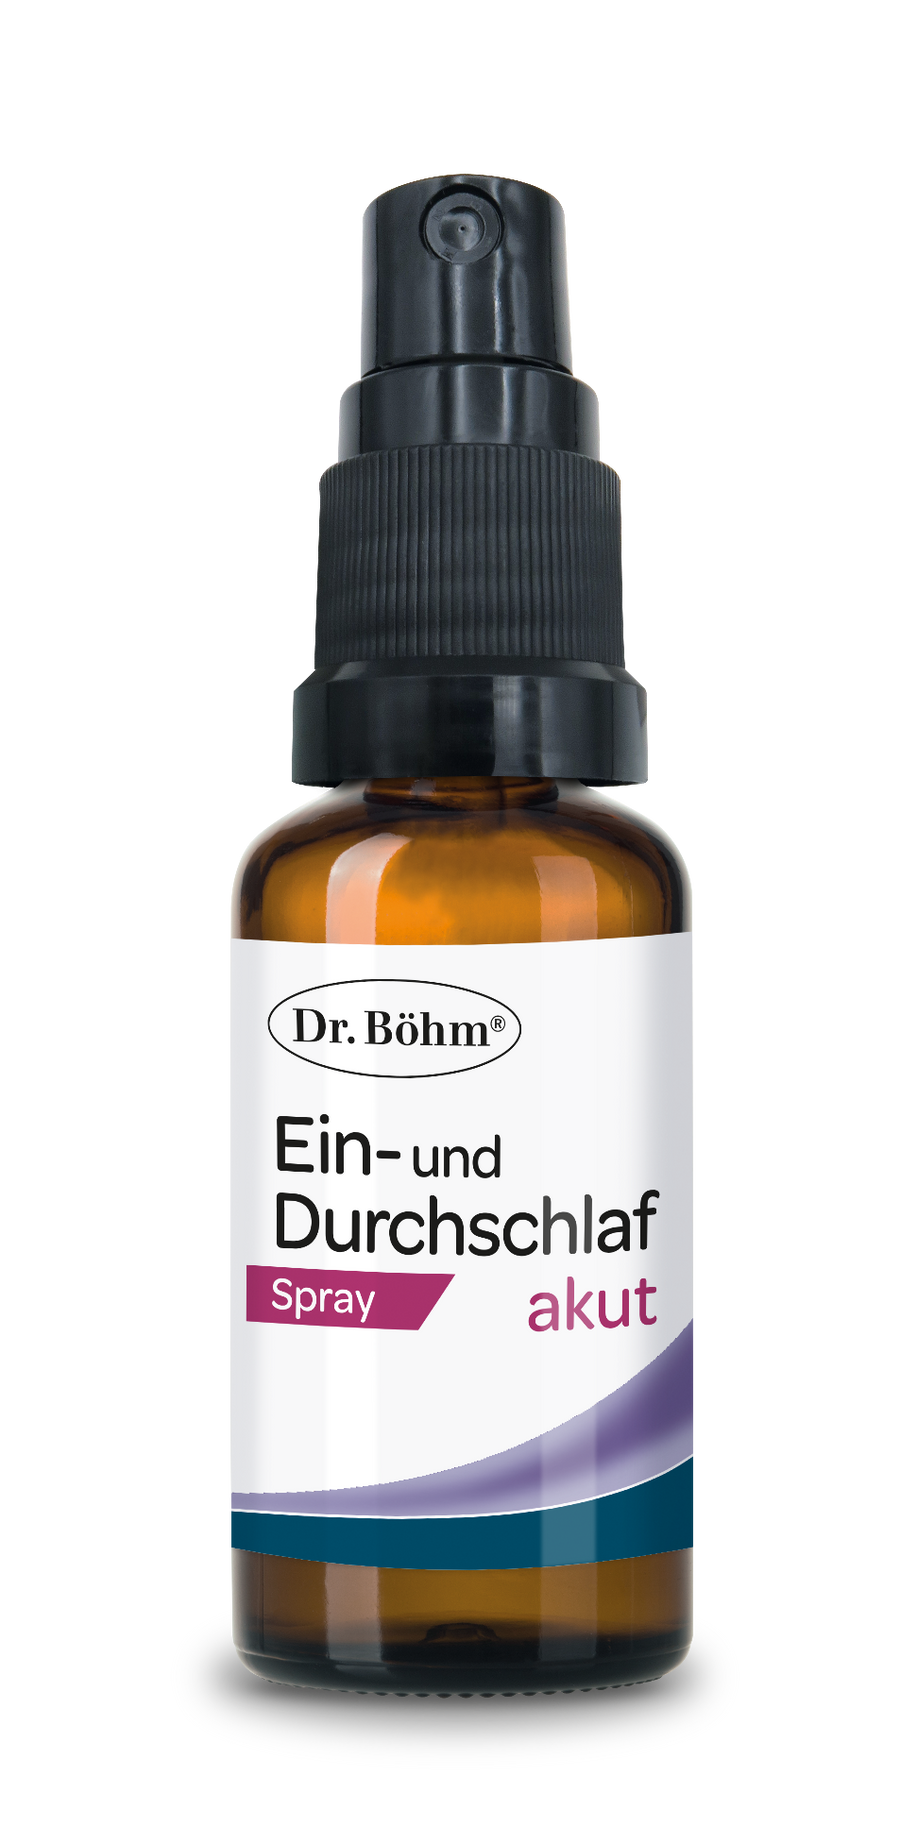 Dr. Böhm® Ein- und Durchschlaf akut Spray